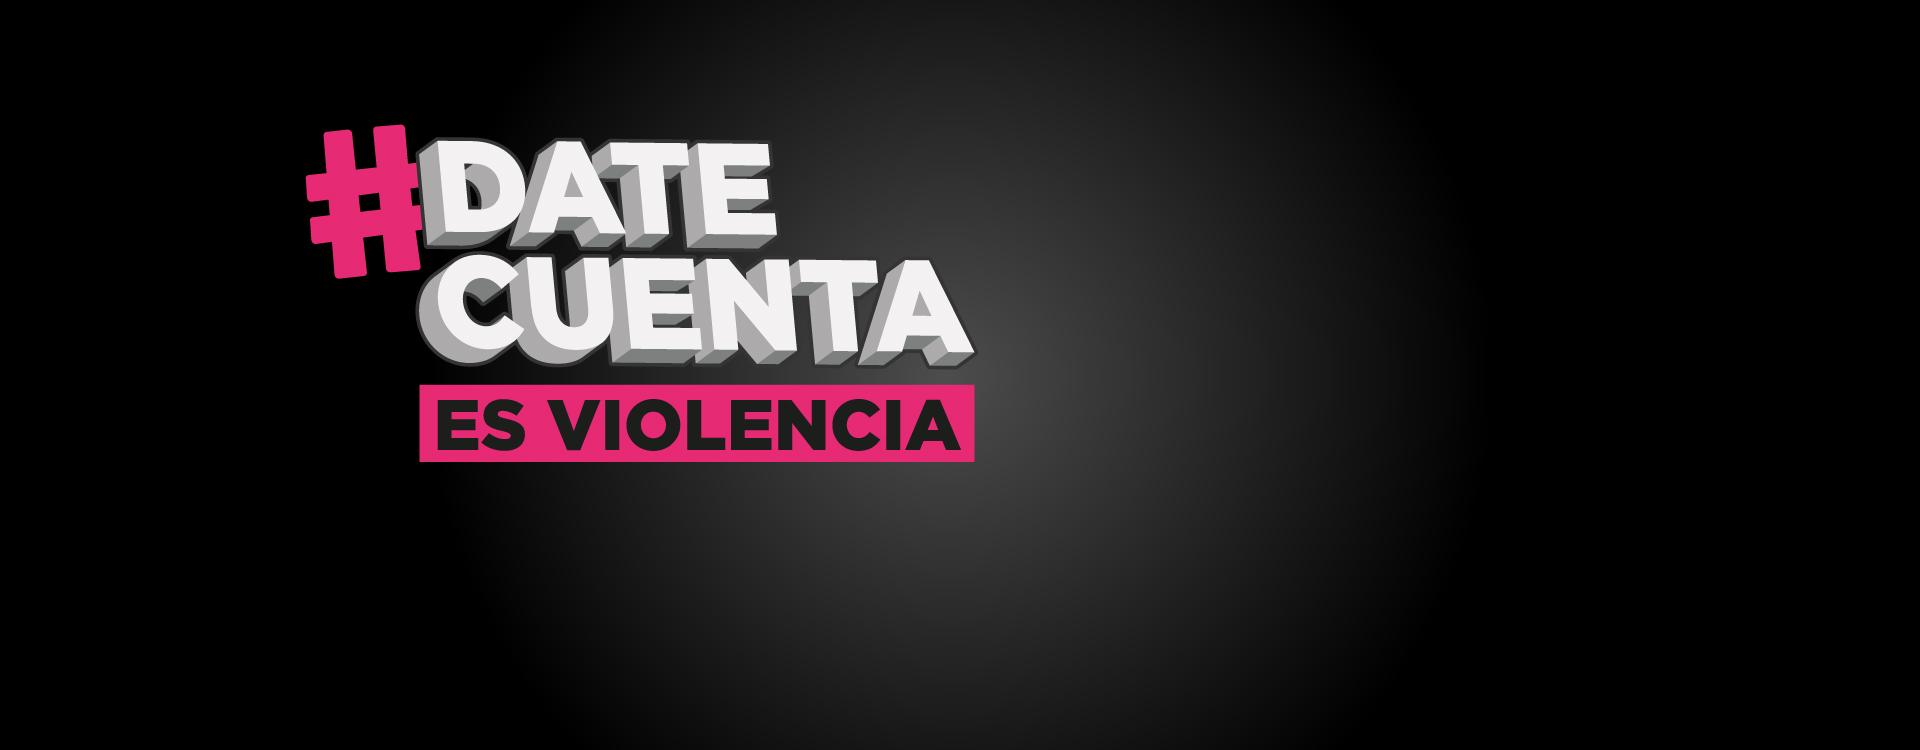 imagen de fondo negro con logo de #DateCuenta